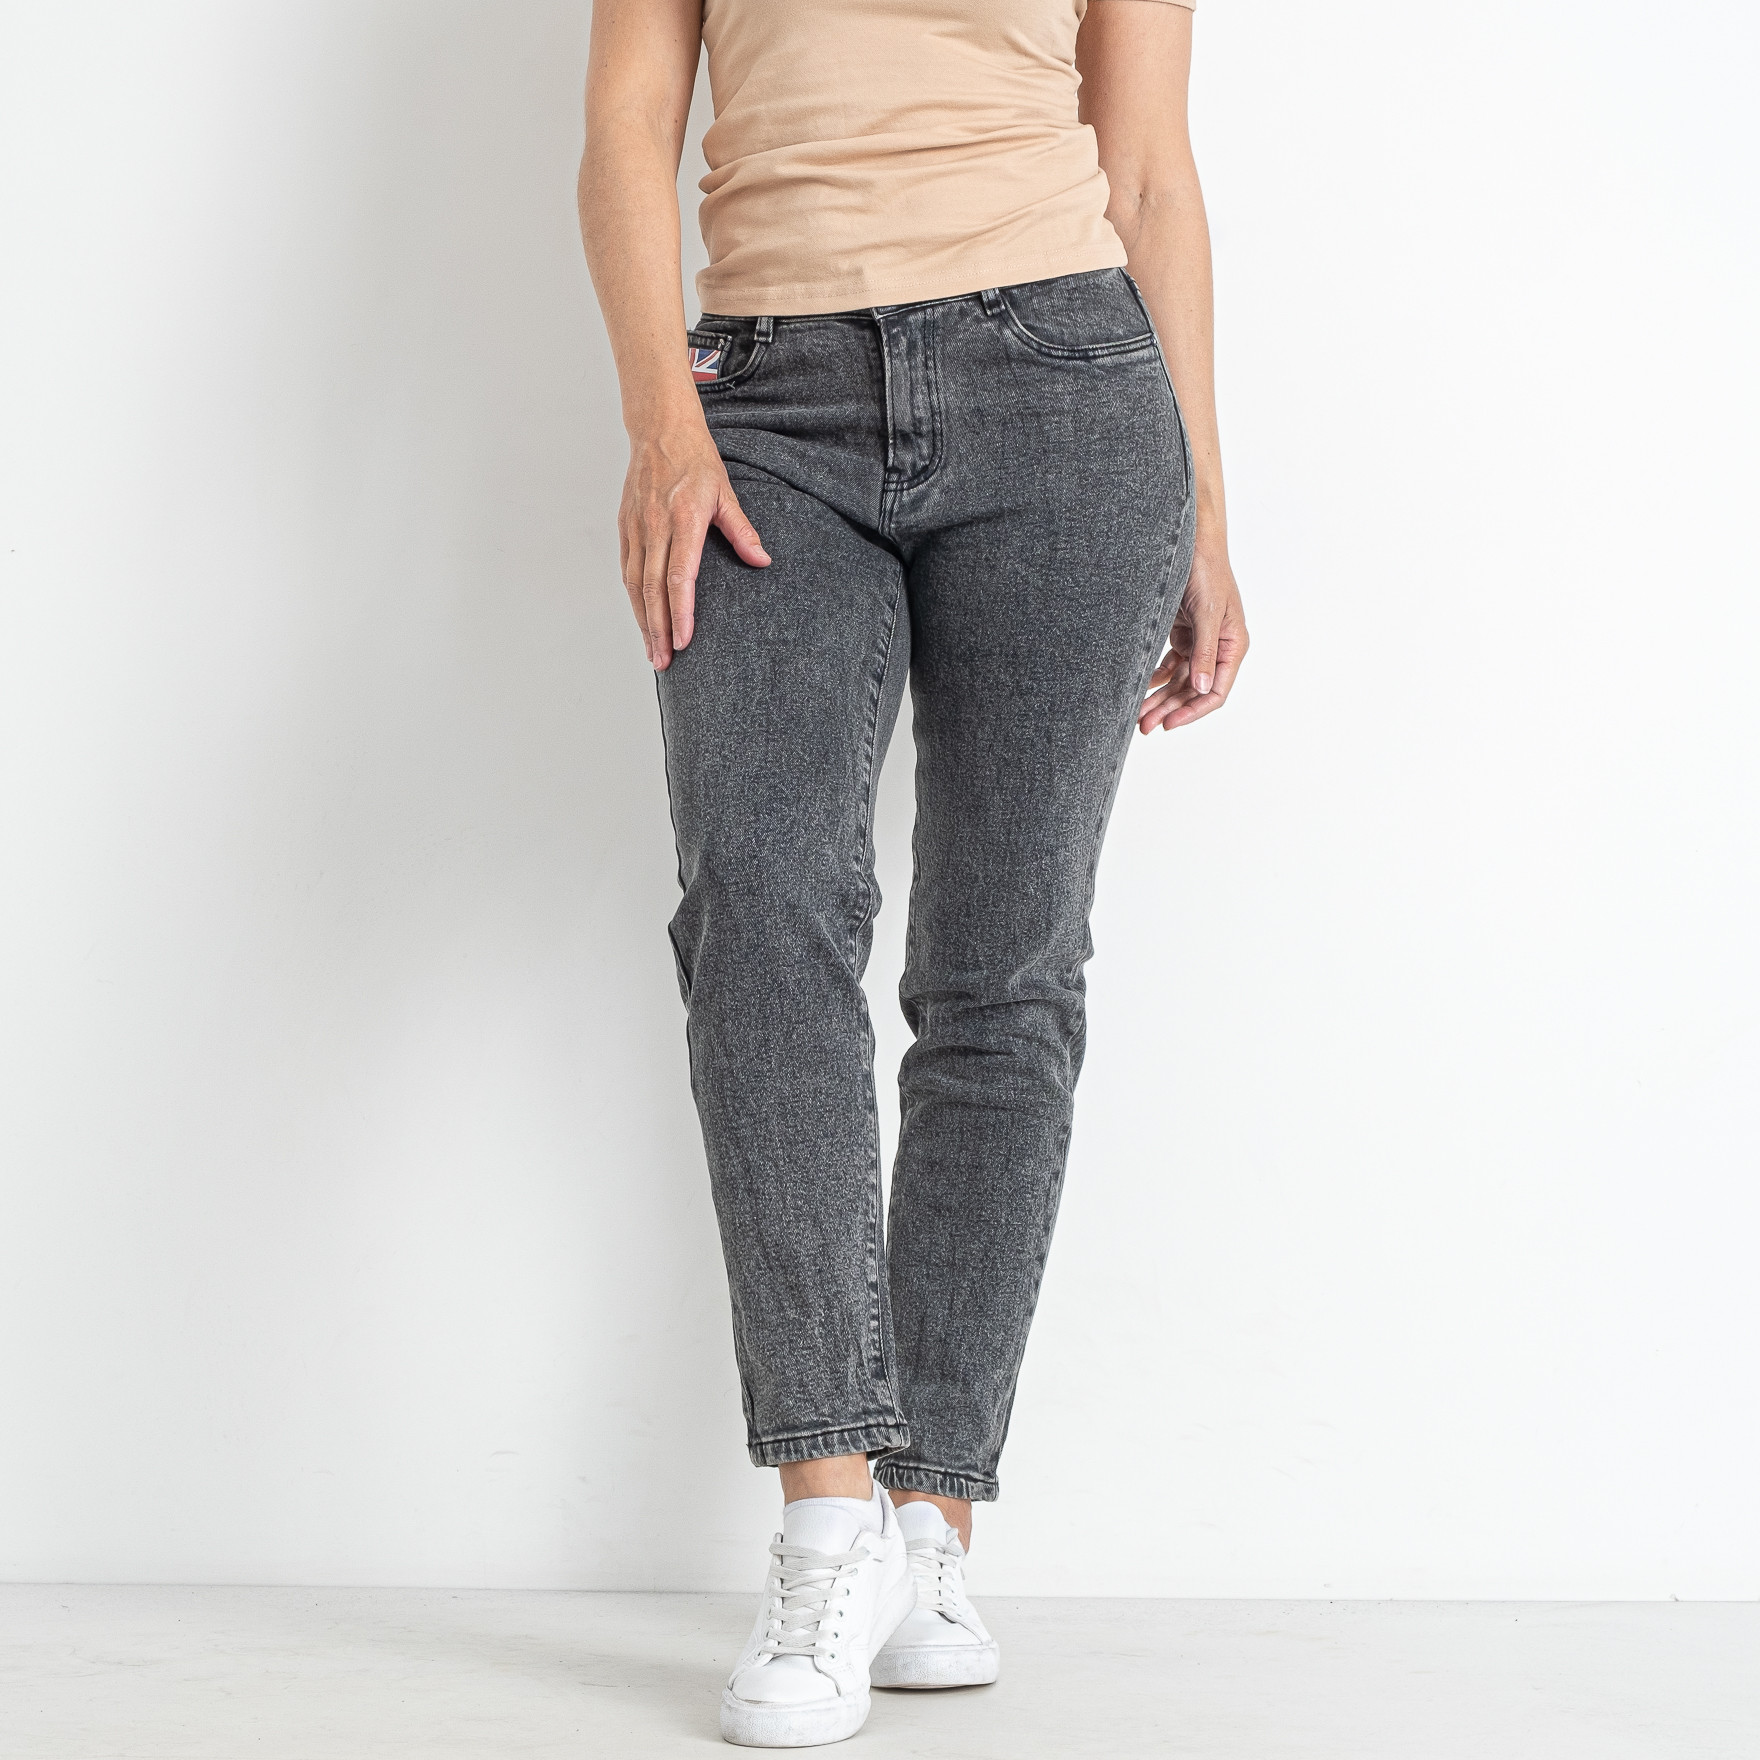 1102-2 серые женские джинсы (6 ед. размеры полубатал: 28. 29. 30. 31. 32. 33)